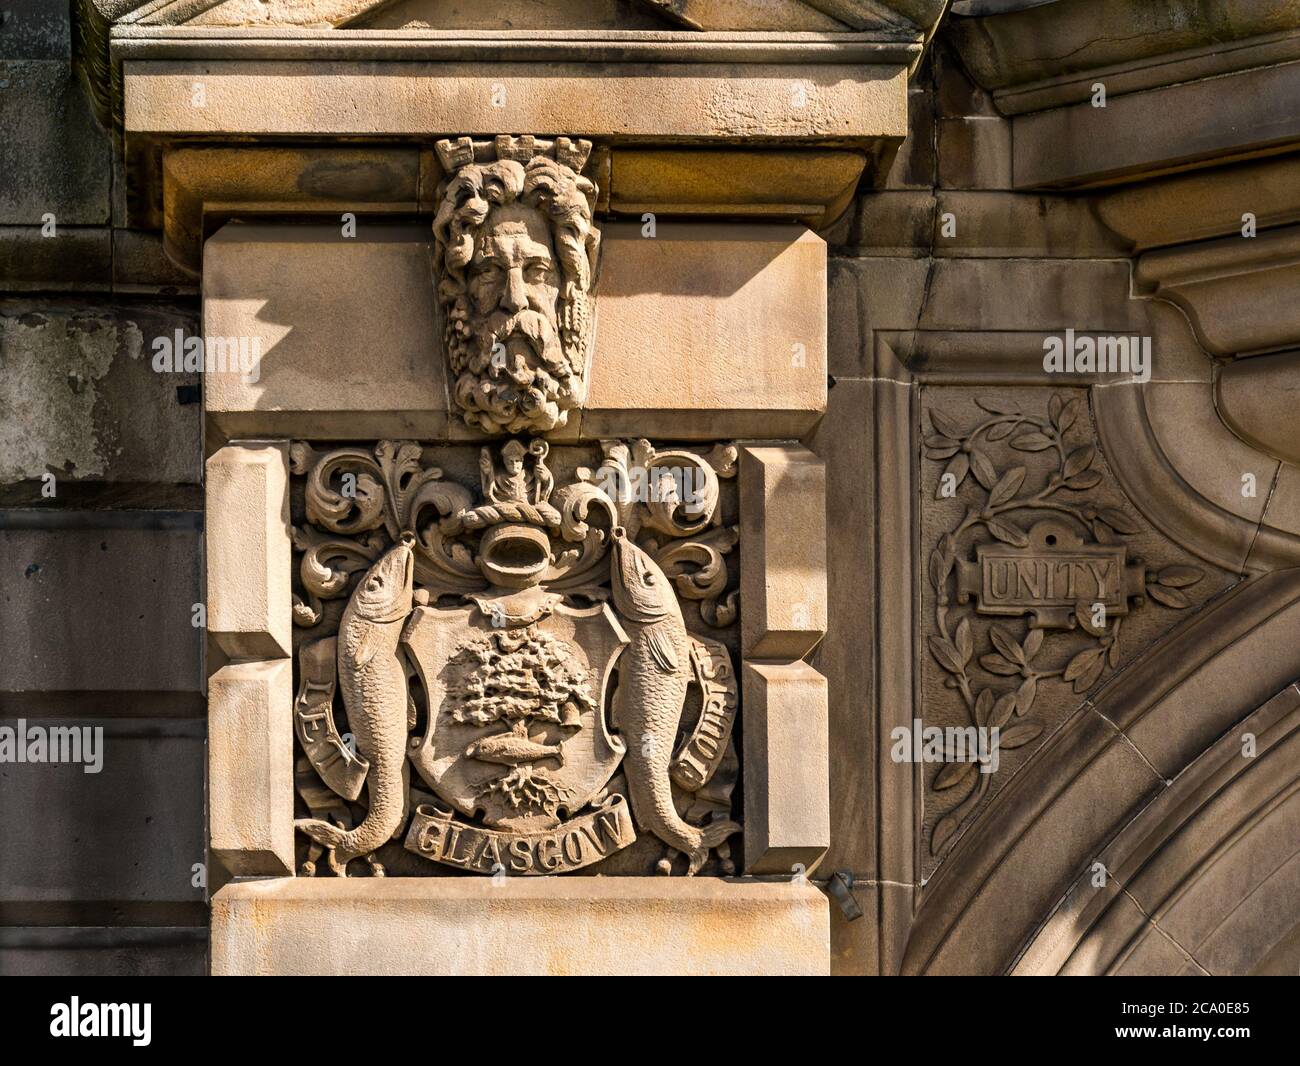 Fish, Oak & St Mungo, Glasgow armoiries sur Great Michael House, anciennement SCWS Building, Leith, Édimbourg, Écosse, Royaume-Uni Banque D'Images